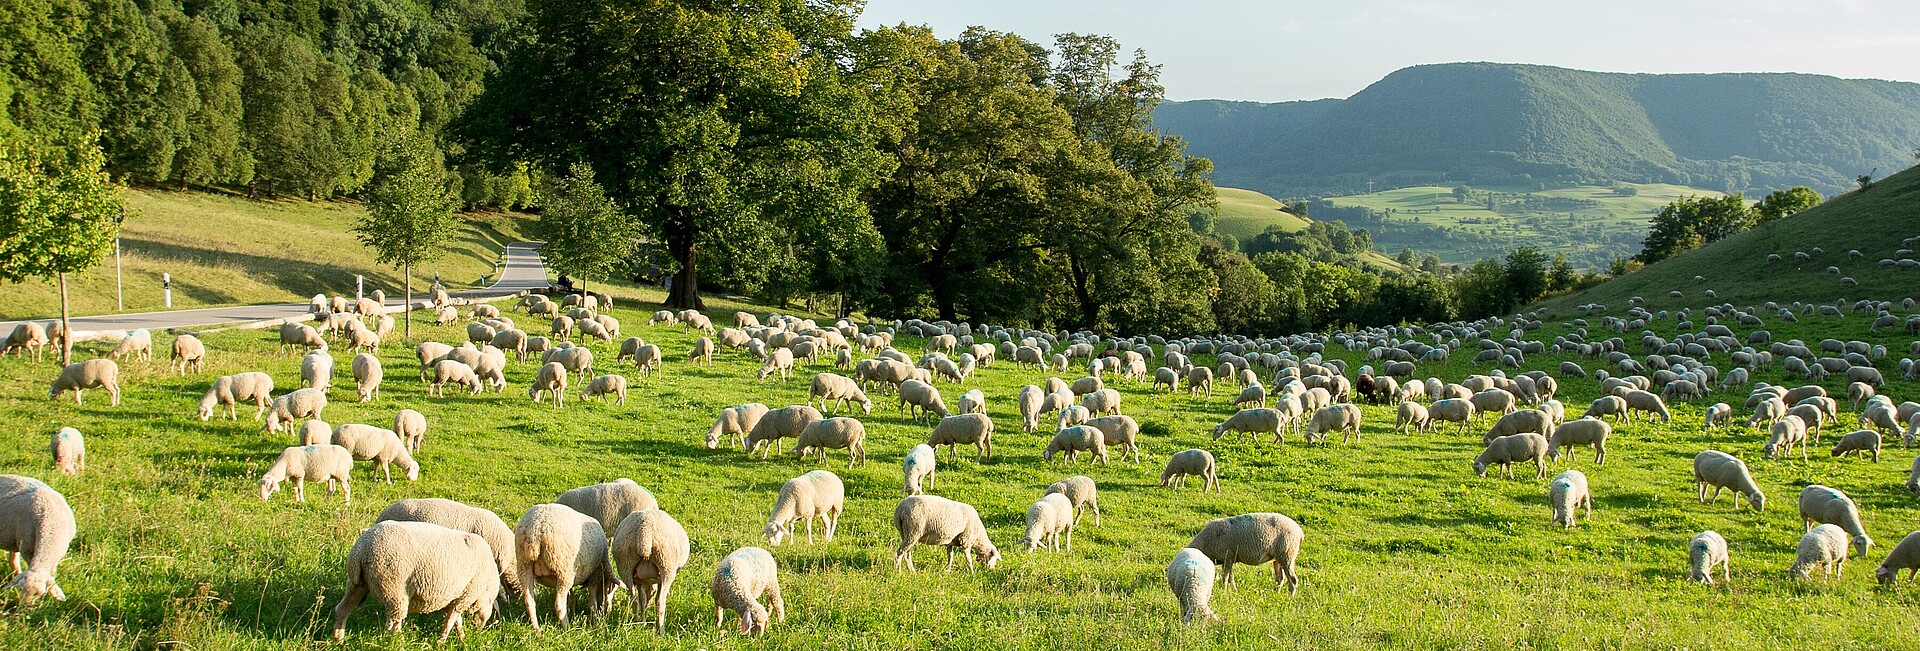 Bild zeigt Schafe auf einer Weide vor einer Hügellandschaft